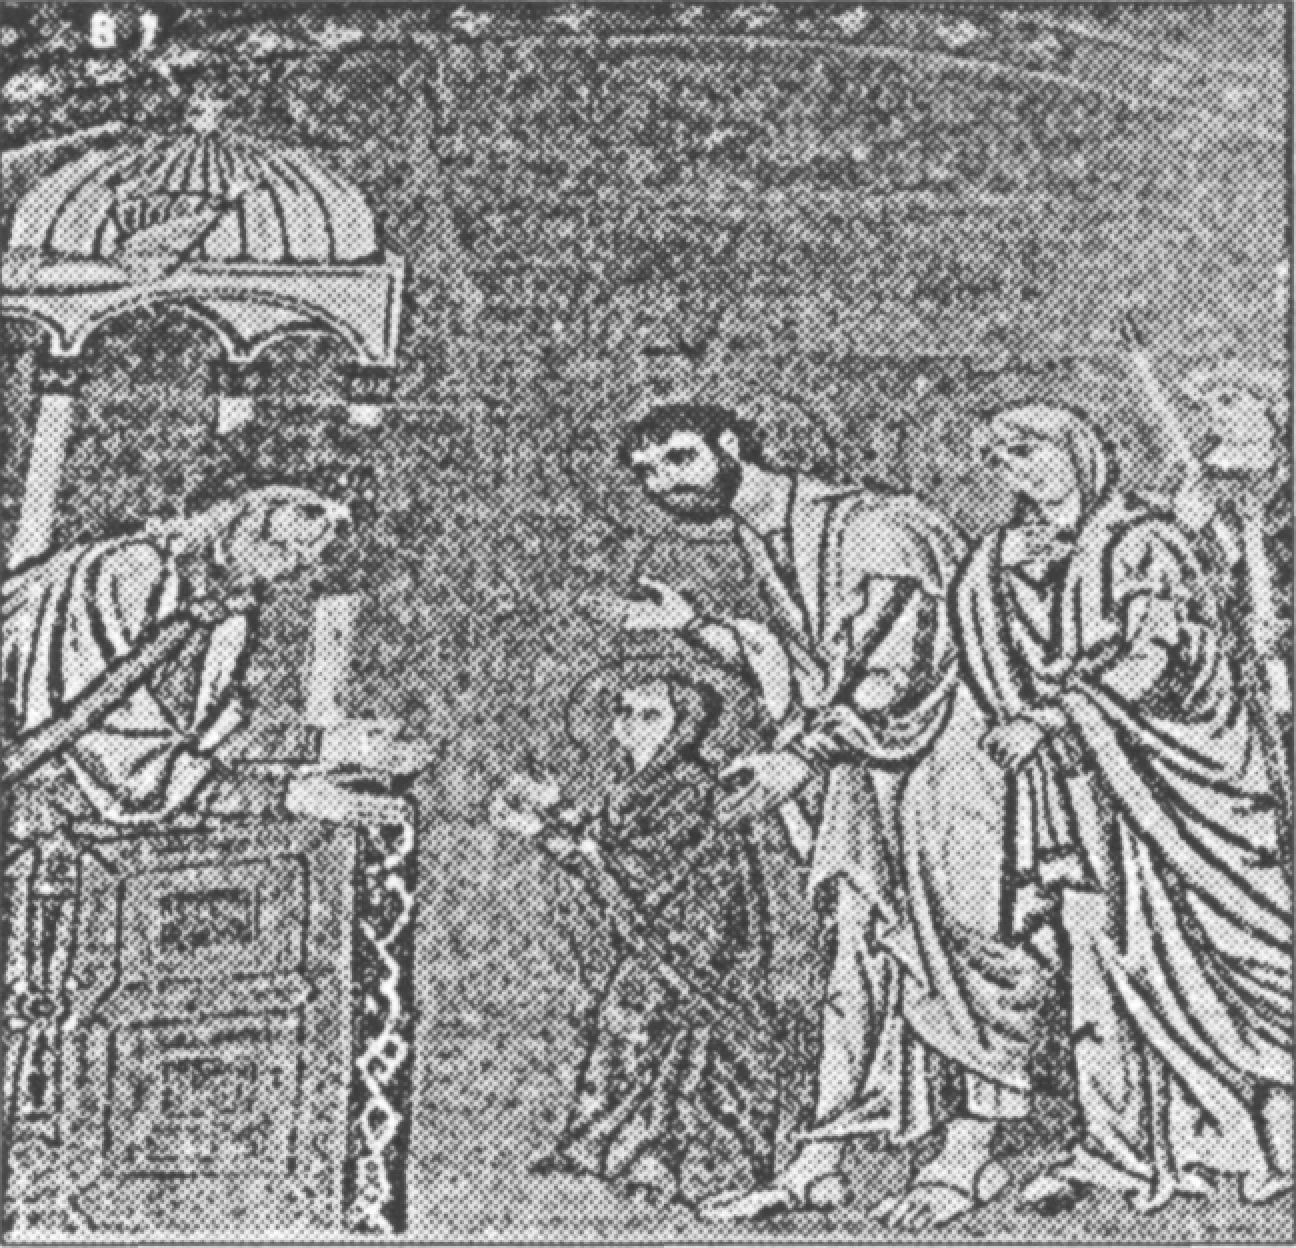 Ил. 100. Принесение Марии первосвященнику. Мозаика. Византия. Конец XI в. Кафоликон монастыря Дафни (Афины, Греция)